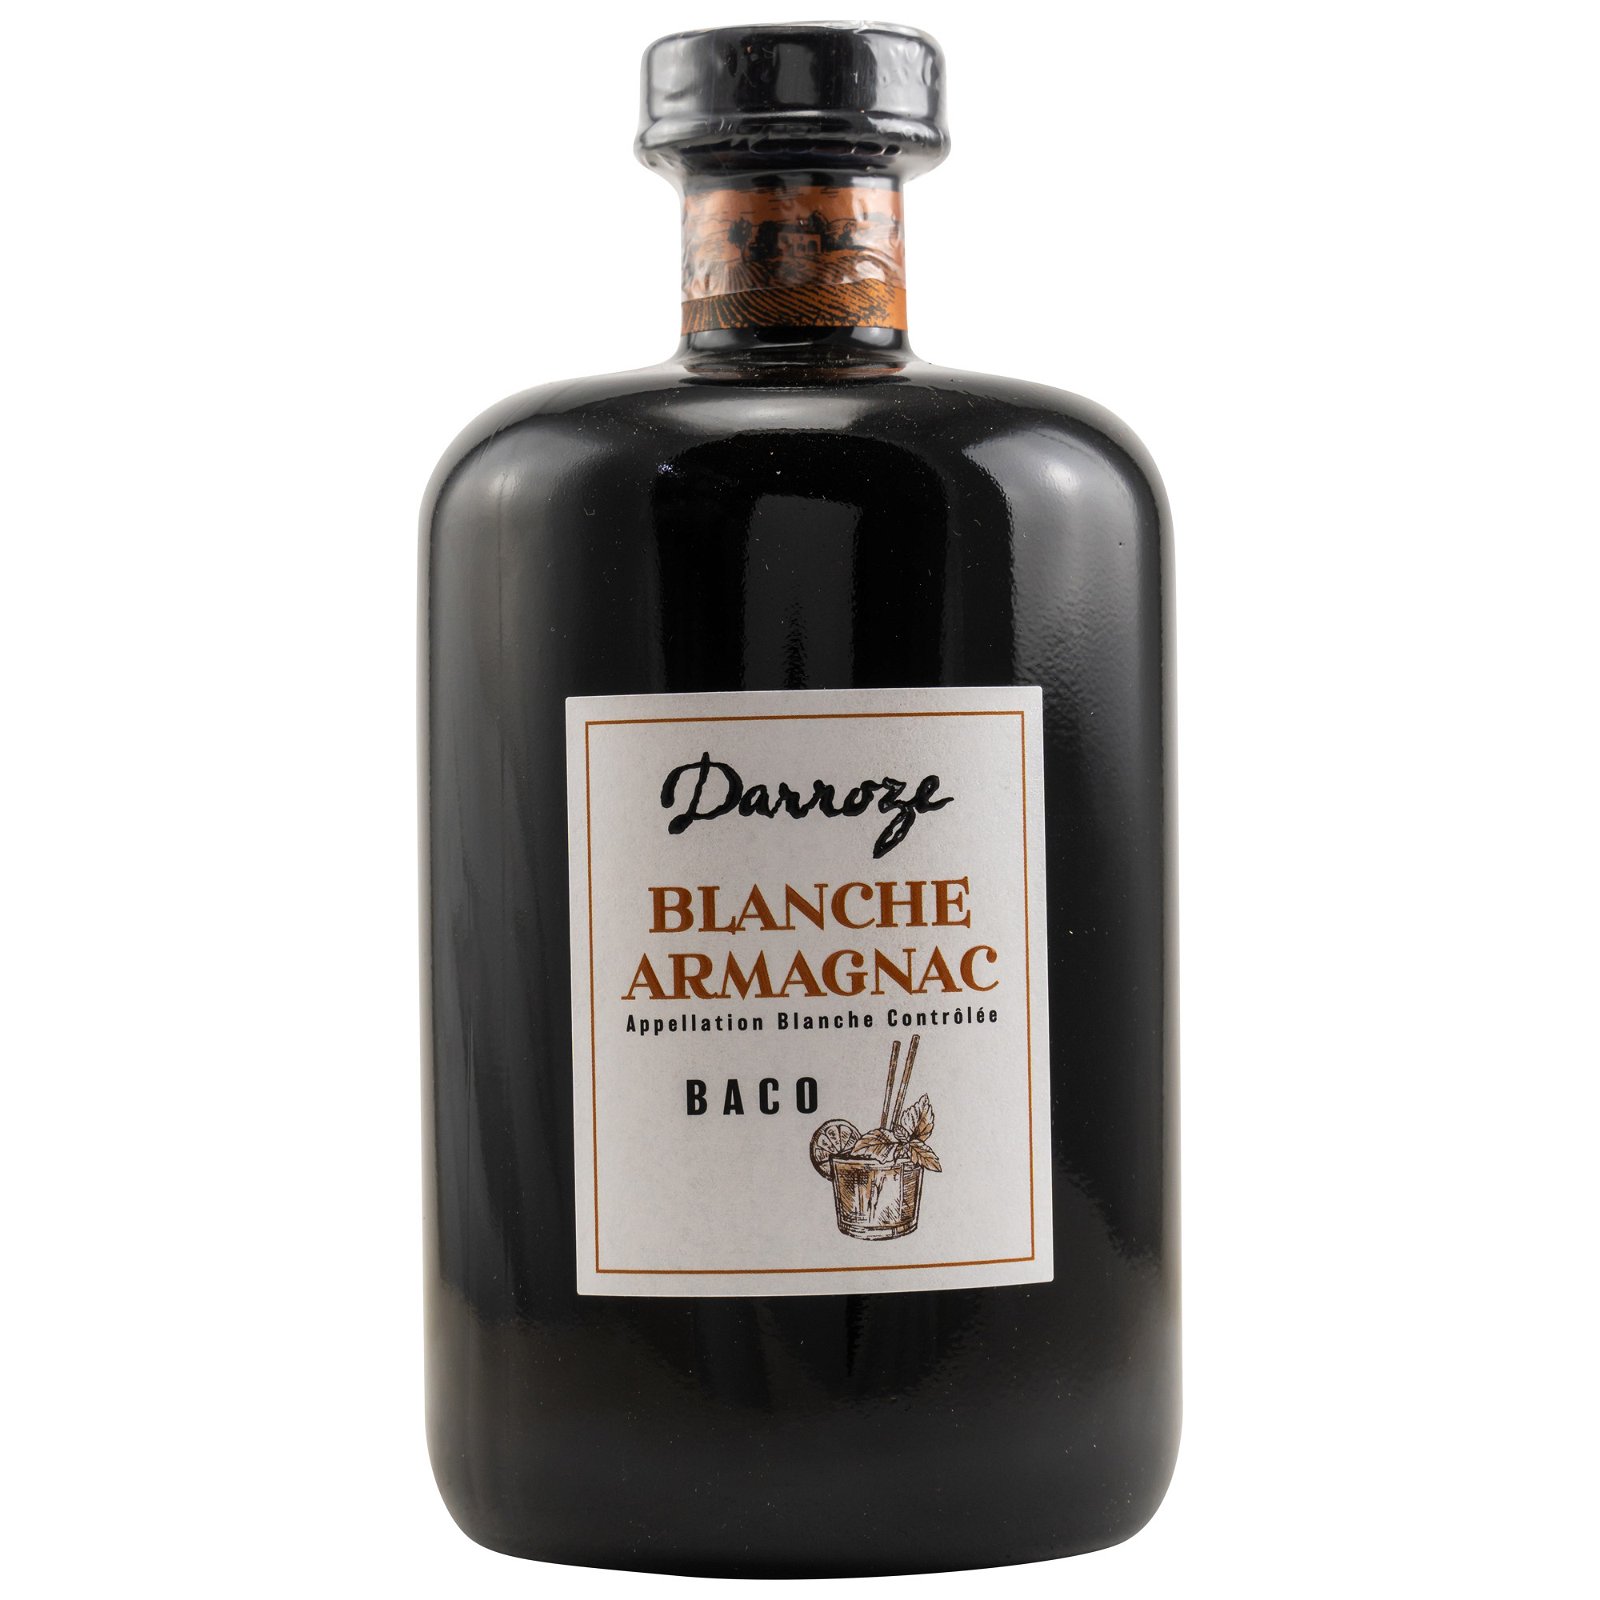 Darroze Blanche Armagnac Baco